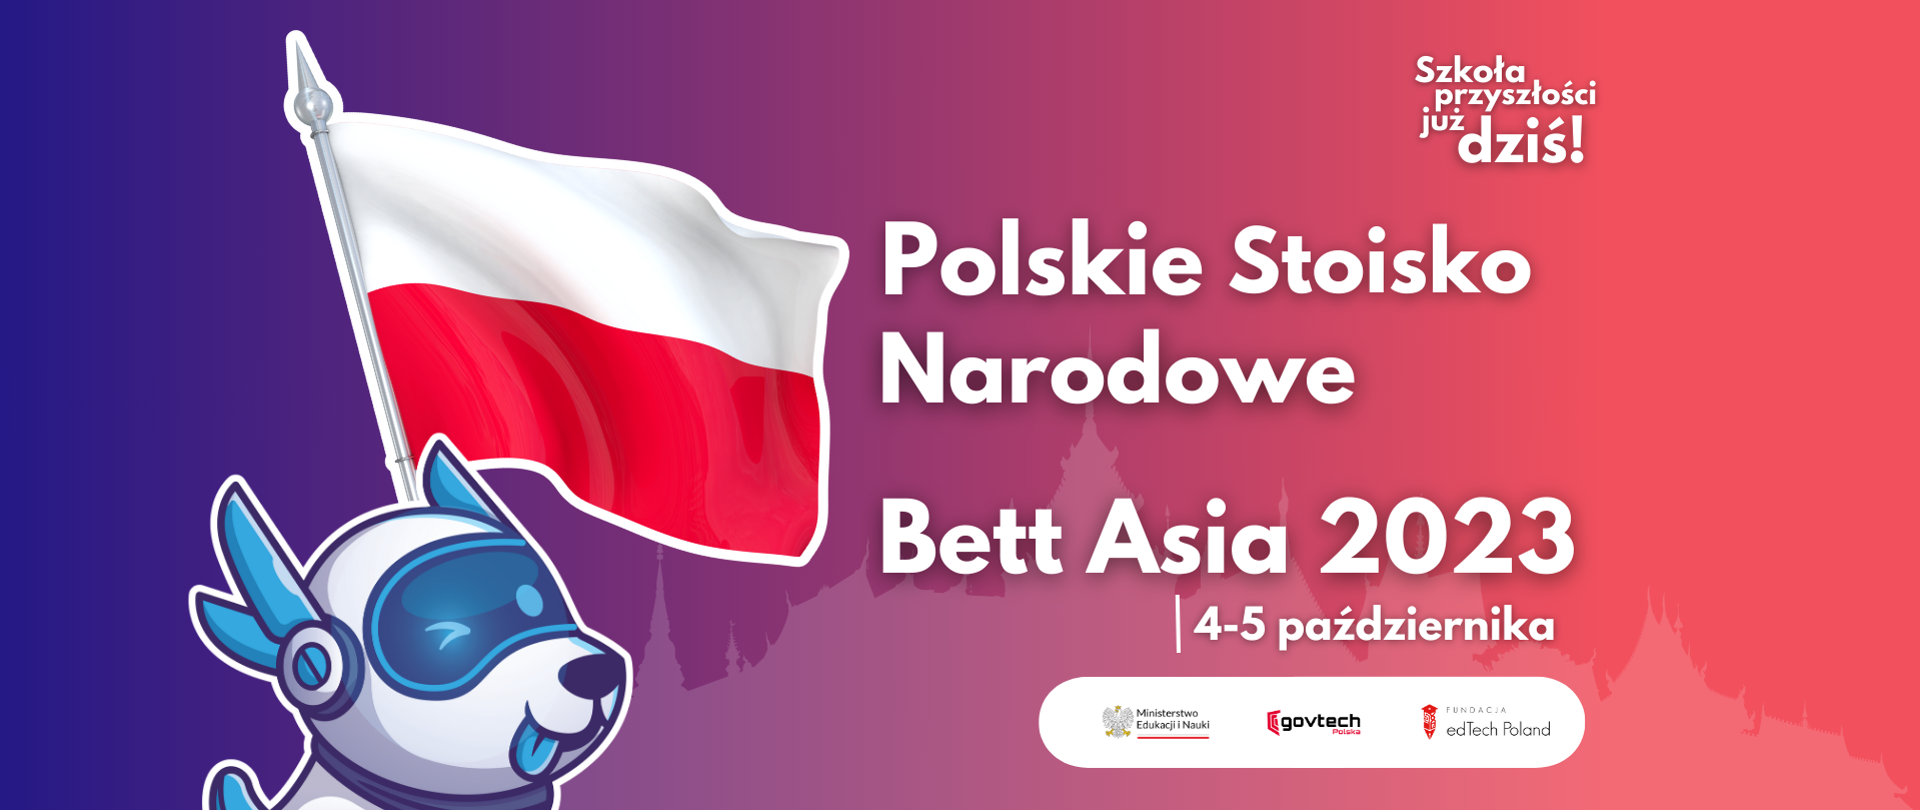 Szkoła przyszłości już dziś! Polskie stoisko narodowe. Bett Asia 2023 4-5 października. 